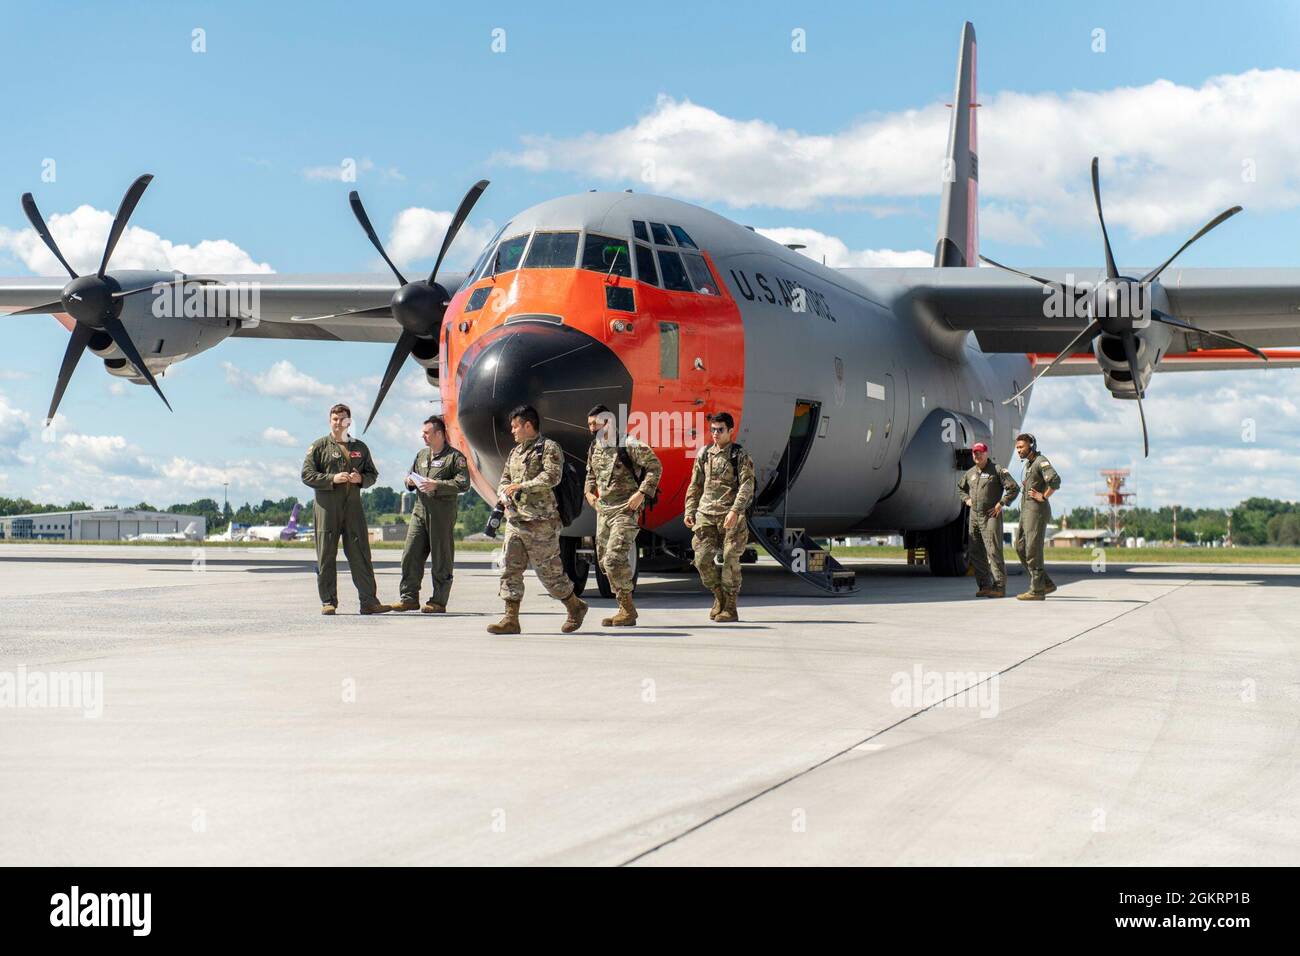 Los aviadores del escuadrón de combate 55th, de la Base de la Fuerza Aérea Shaw, salen del C-130 en la base de la Guardia Nacional Aérea de Vermont, South Burlington, Vermont, 23 de junio de 2021. El F-16s del escuadrón de combate de 55th volará misiones integradas de supresión de defensas aéreas enemigas (SEAD) de la ofensiva antiaérea (OCA) con aviones F-35A Lightning II asignados al escuadrón de combate de 134th, Guardia Nacional Aérea de Vermont. Foto de stock